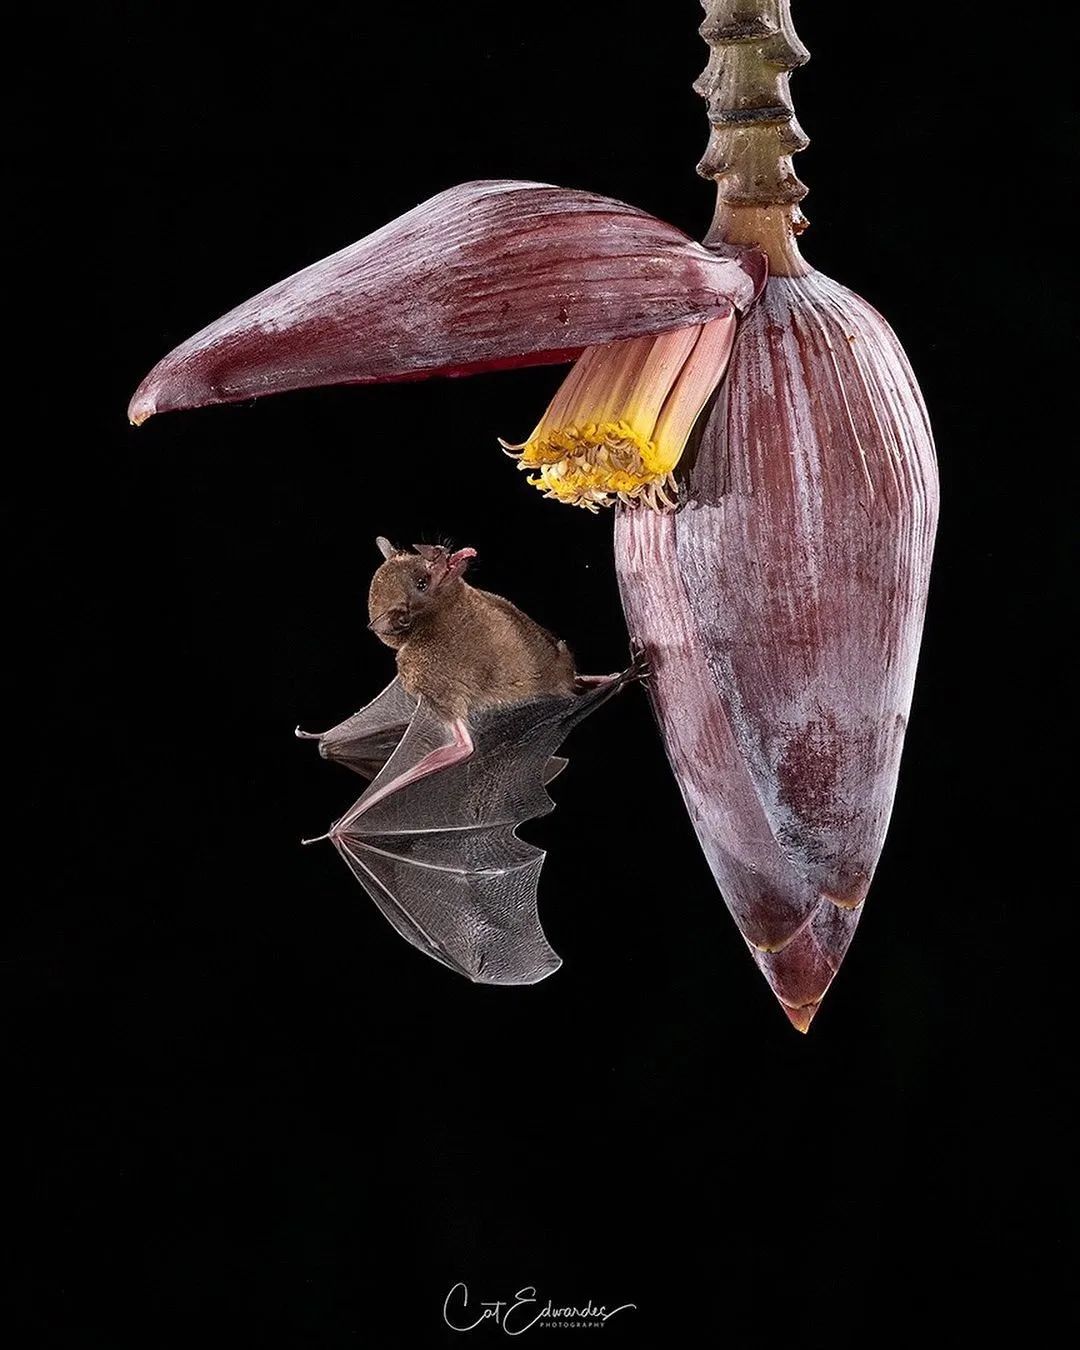 采用花蜜喂养的长舌蝙蝠来源:www